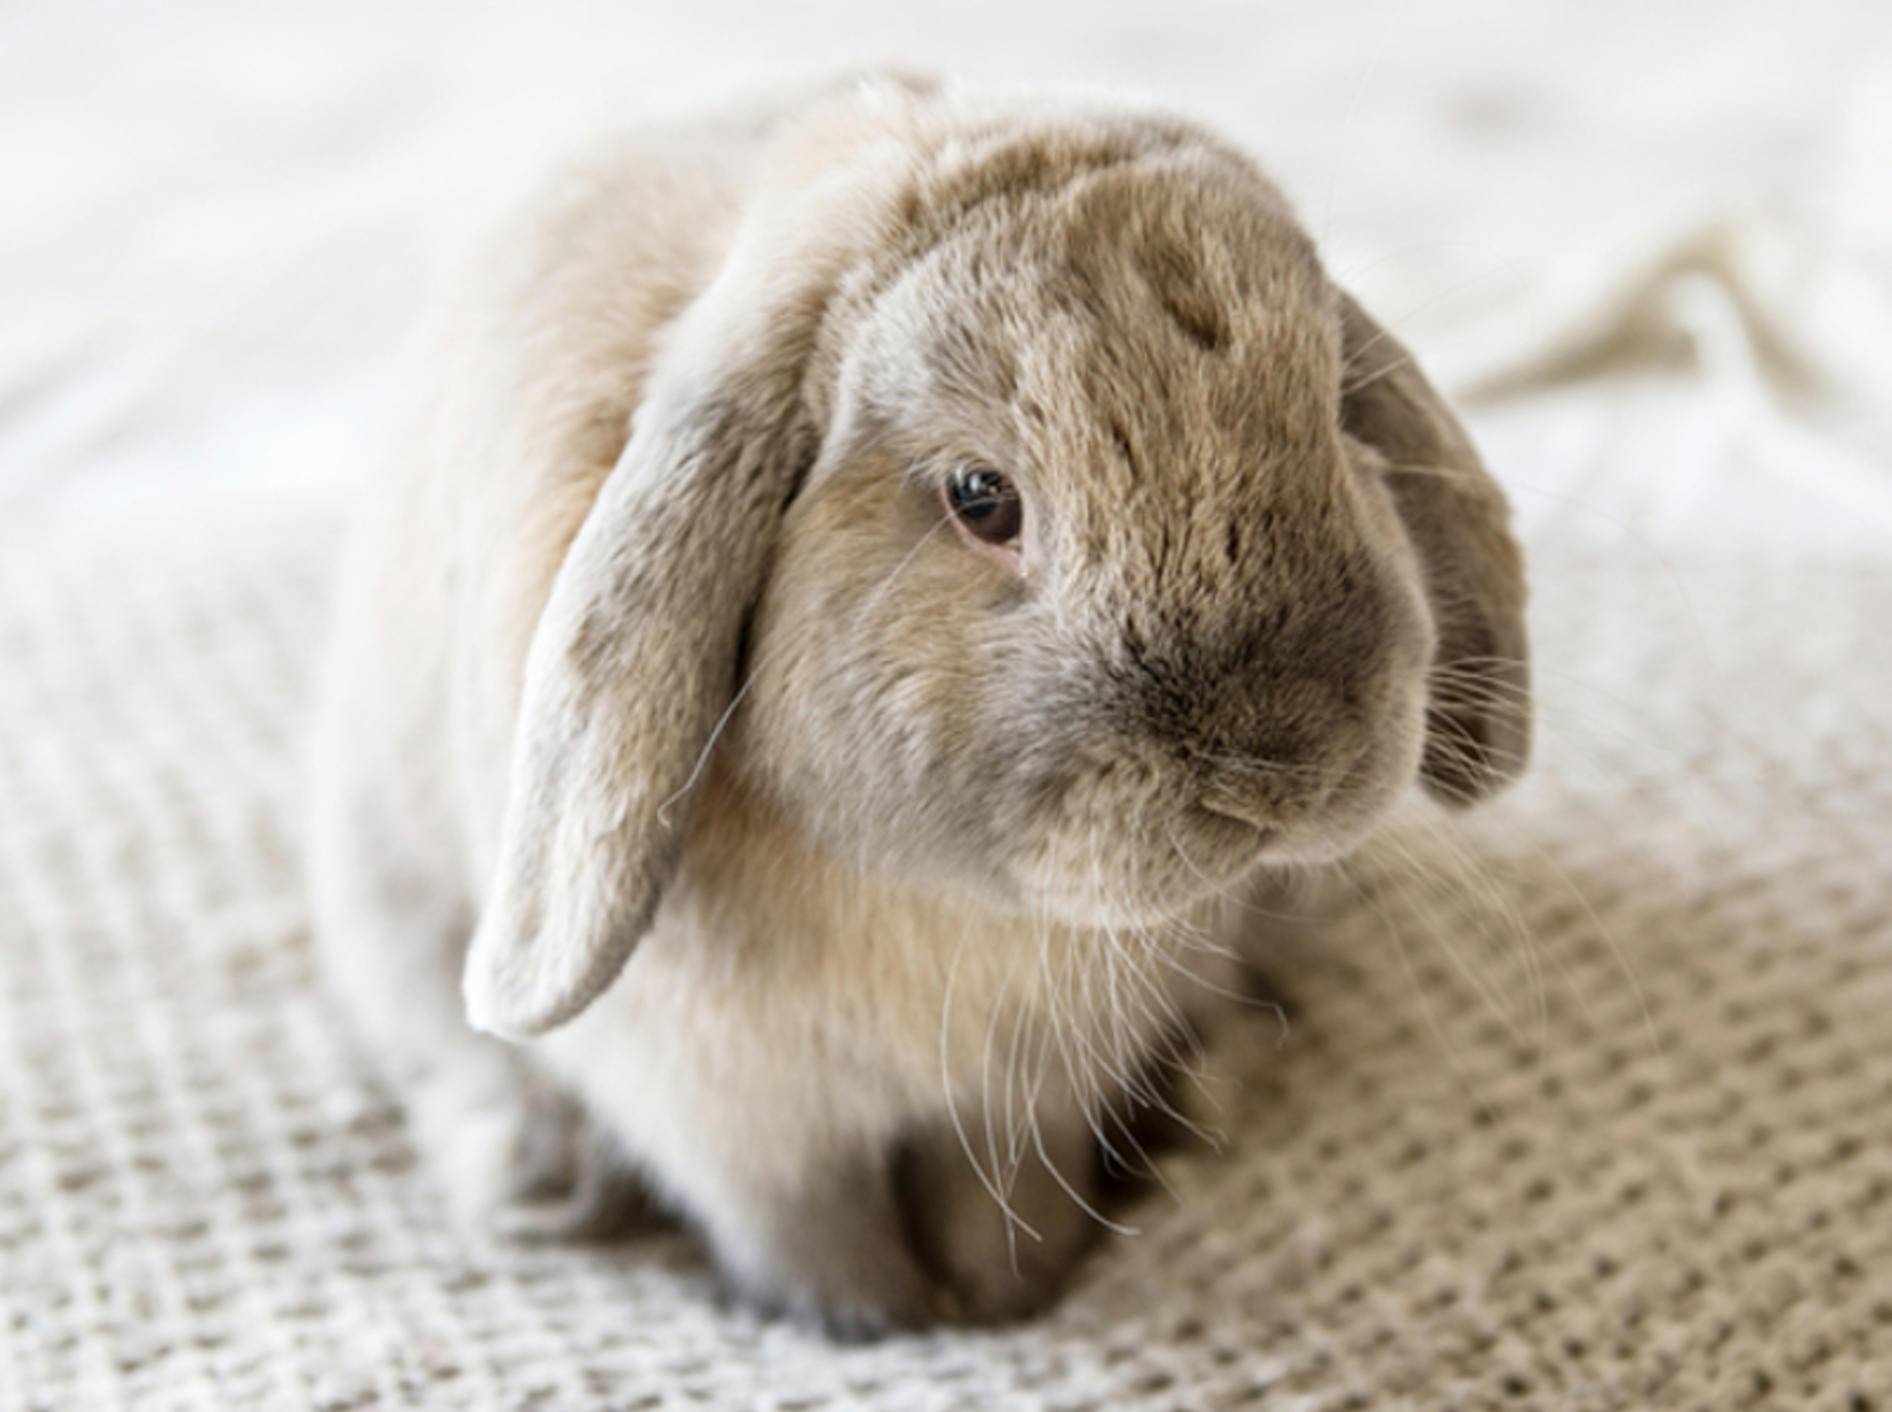 Kaninchenschnupfen kommt besonders häufig in der kalten Jahreszeit vor – shutterstock / Sofiya Stoyakina